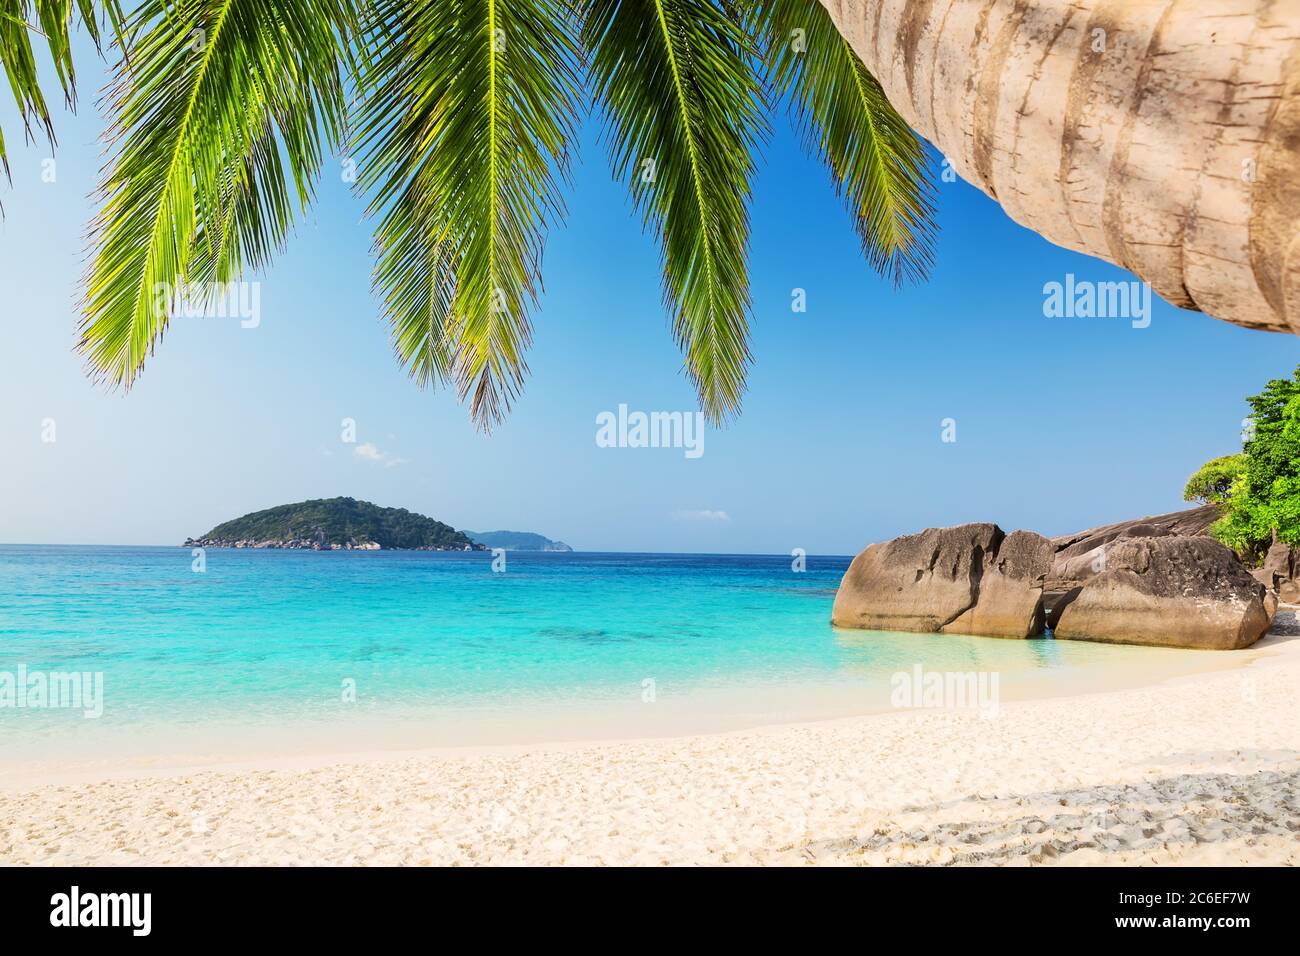 Kokospalmen gegen blauen Himmel und schönen Strand in Similan Insel, Thailand. Urlaub Urlaub Urlaub Hintergrund Wallpaper. Blick auf schöne tropische Ba Stockfoto